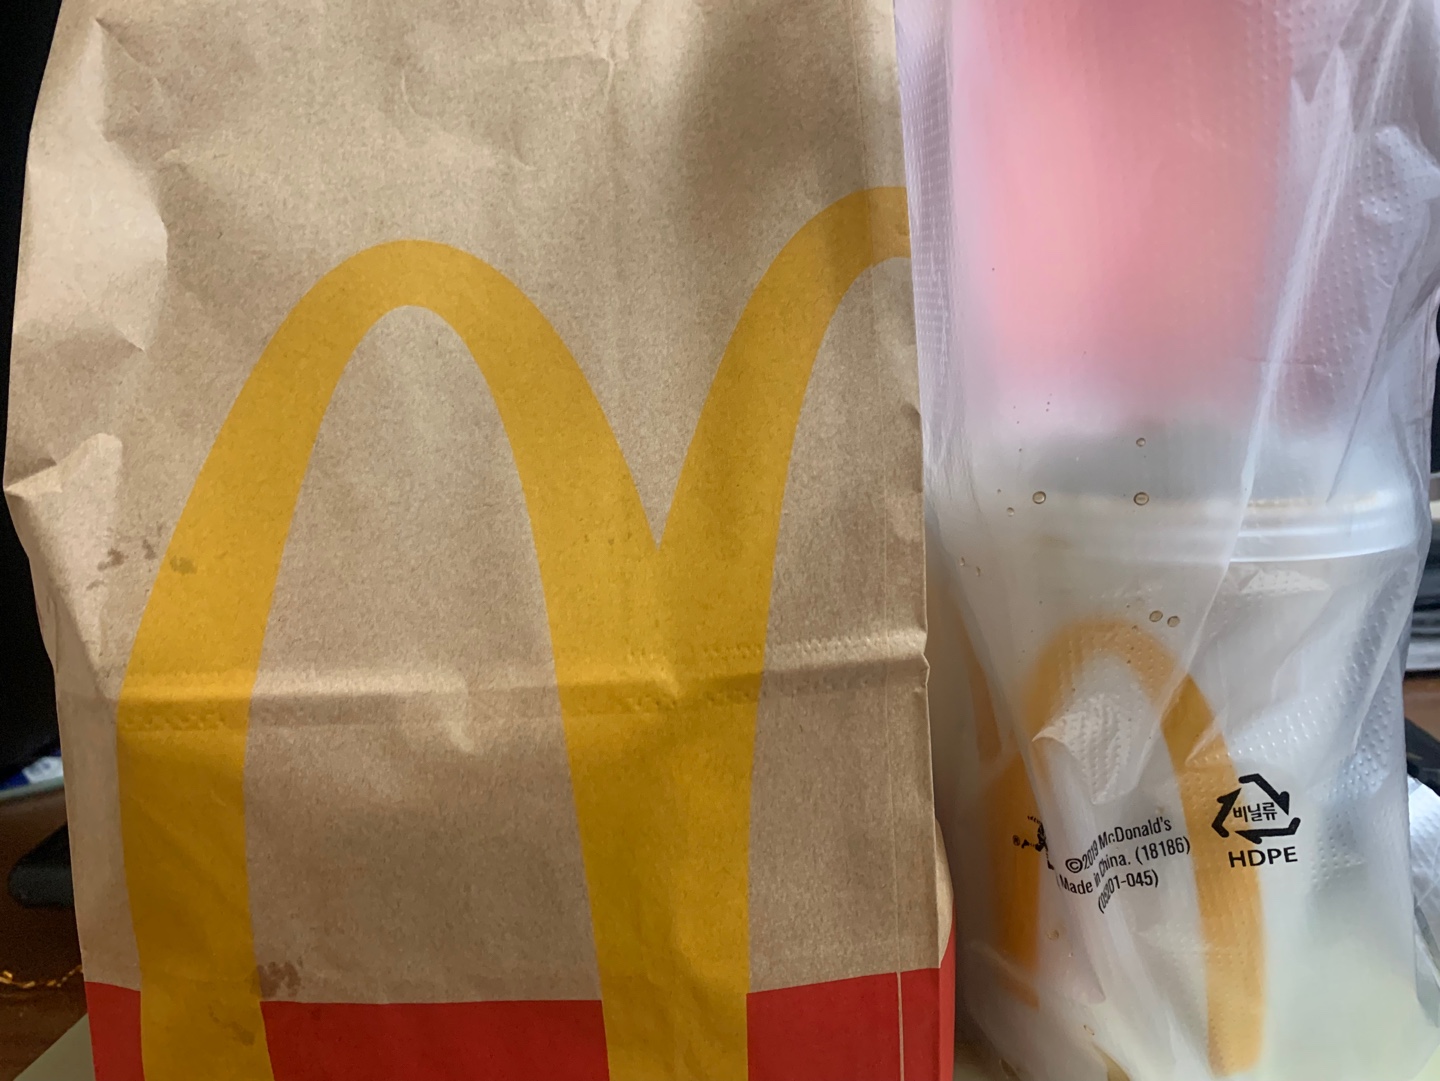 맥도날드-메뉴-가격-영업시간-슈슈버거-맥날